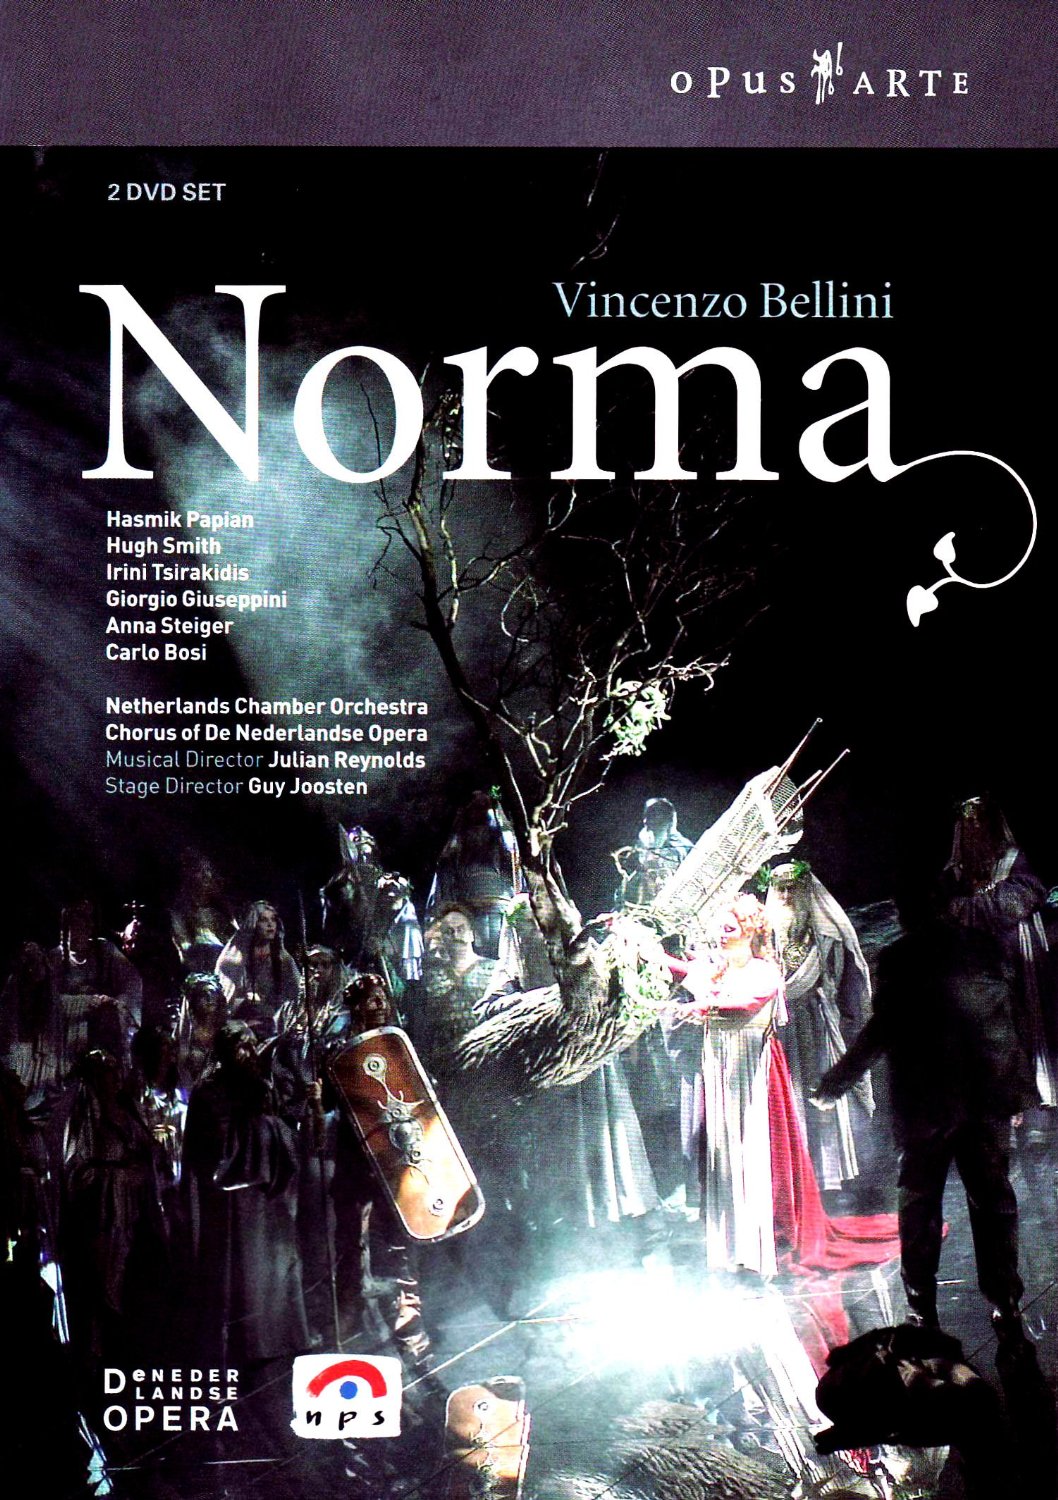 Music Dvd Vincenzo Bellini - Norma (2 Dvd) NUOVO SIGILLATO, EDIZIONE DEL 28/09/2006 SUBITO DISPONIBILE